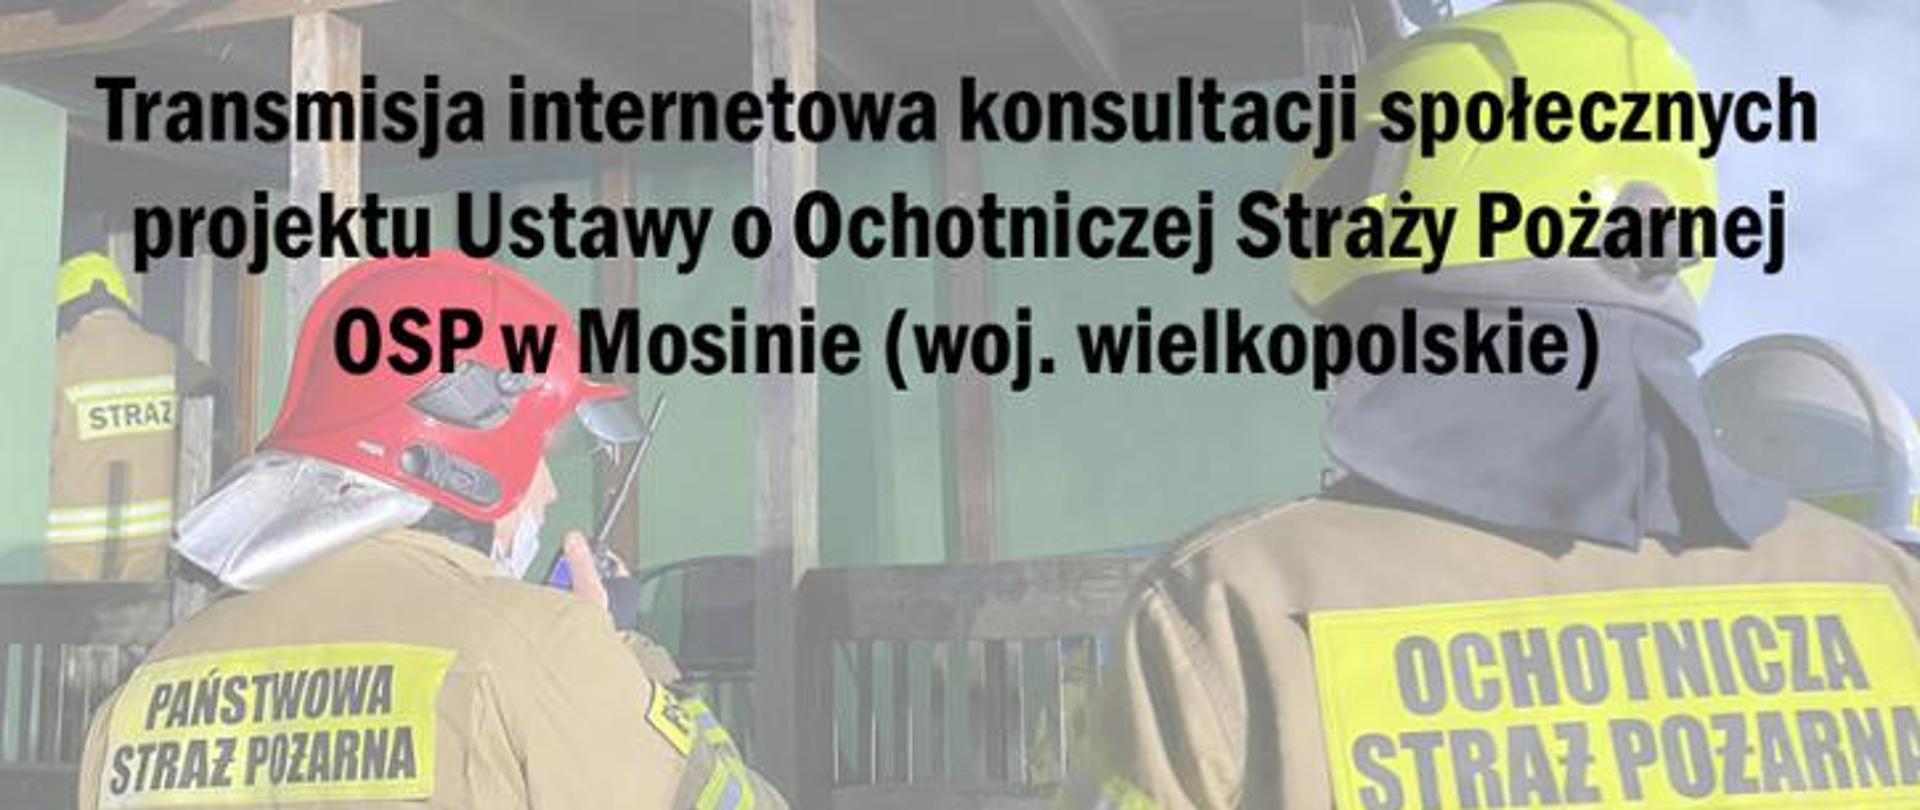 Zdjęcie przedstawia strażaków podczas działań. Jeden ze strażaków w czerwonym hełmie, piaskowym ubraniu specjalnym z napisem Państwowa Straż Pożarna. Drugi strażak w żółtym hełmie, piaskowym ubraniu specjalnym oraz napisem Ochotnicza Straż Pożarna. Zdjęcie jest jasne, tak aby był widoczny napis: "Transmisja internetowa konsultacji społecznych ustawa OSP."